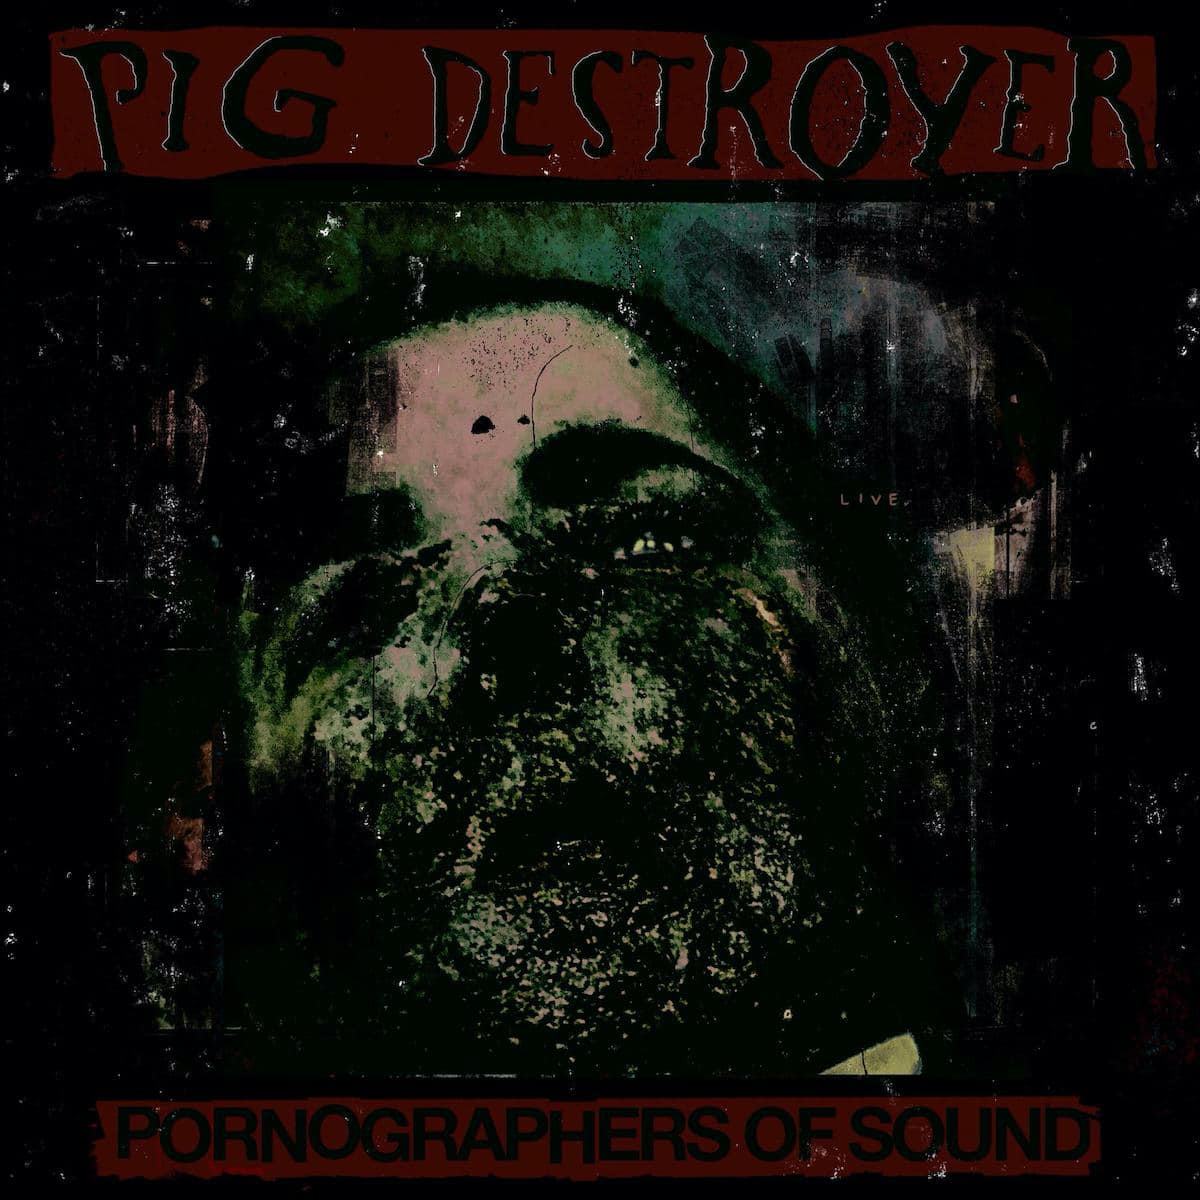 pig-destroyer-pornografers-of-sound-album-cover.jpg